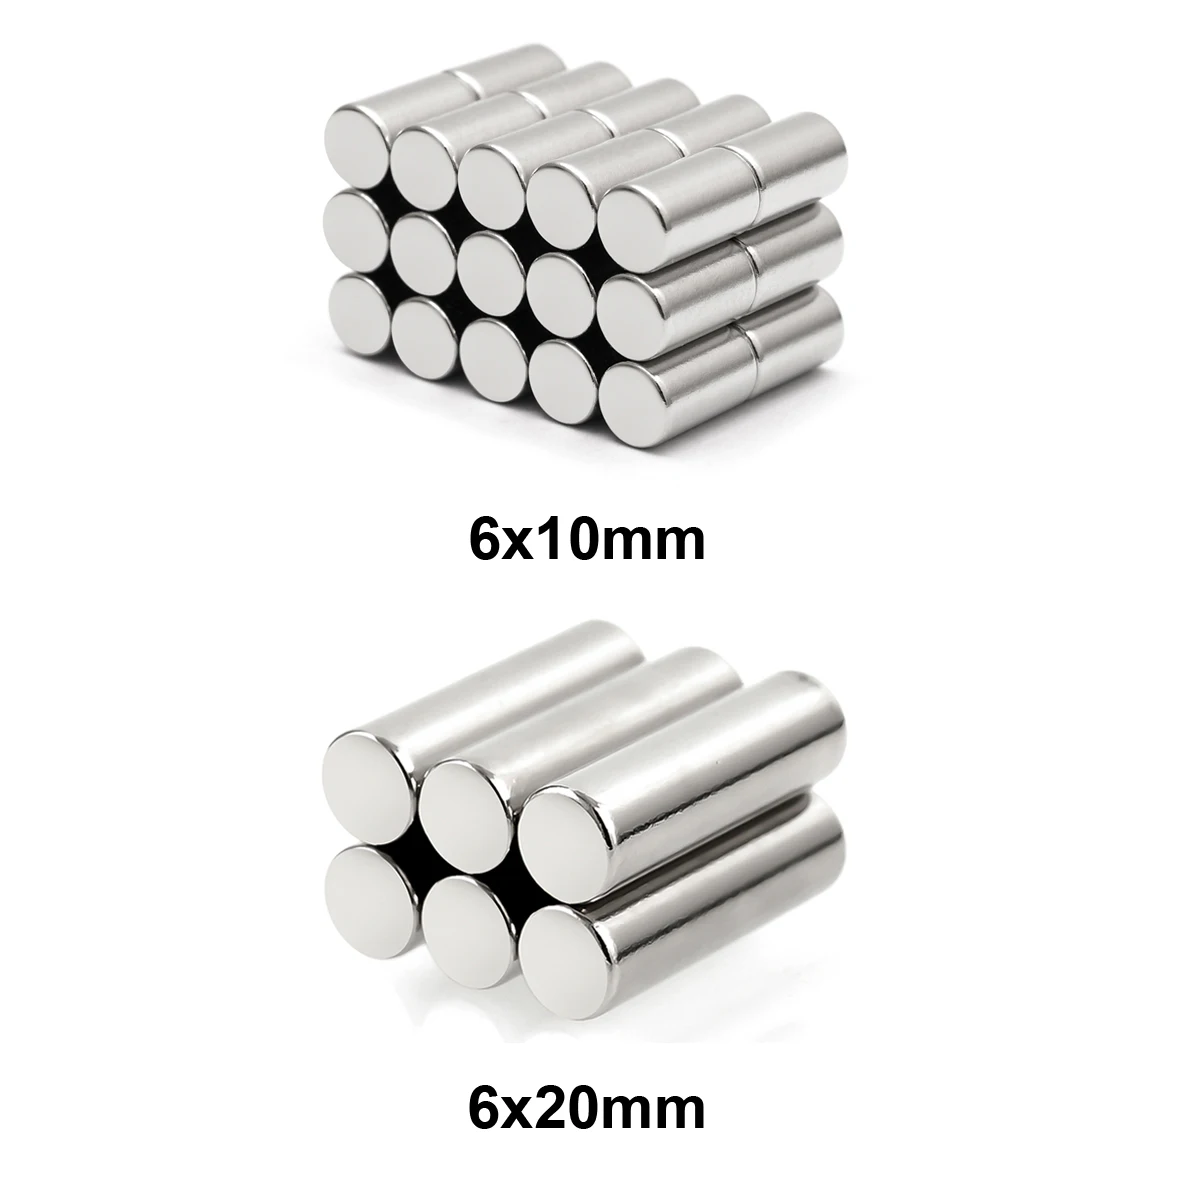 ZOOFOXS 6x1 6x1.5 6x2 6x3 6x4 6x5 6x6 6x8 6x10 6x20mm Ronde Neodymium magneetplaat N35 NdFeB minimagneten voor magnetisch gebruik Scenario's DIY